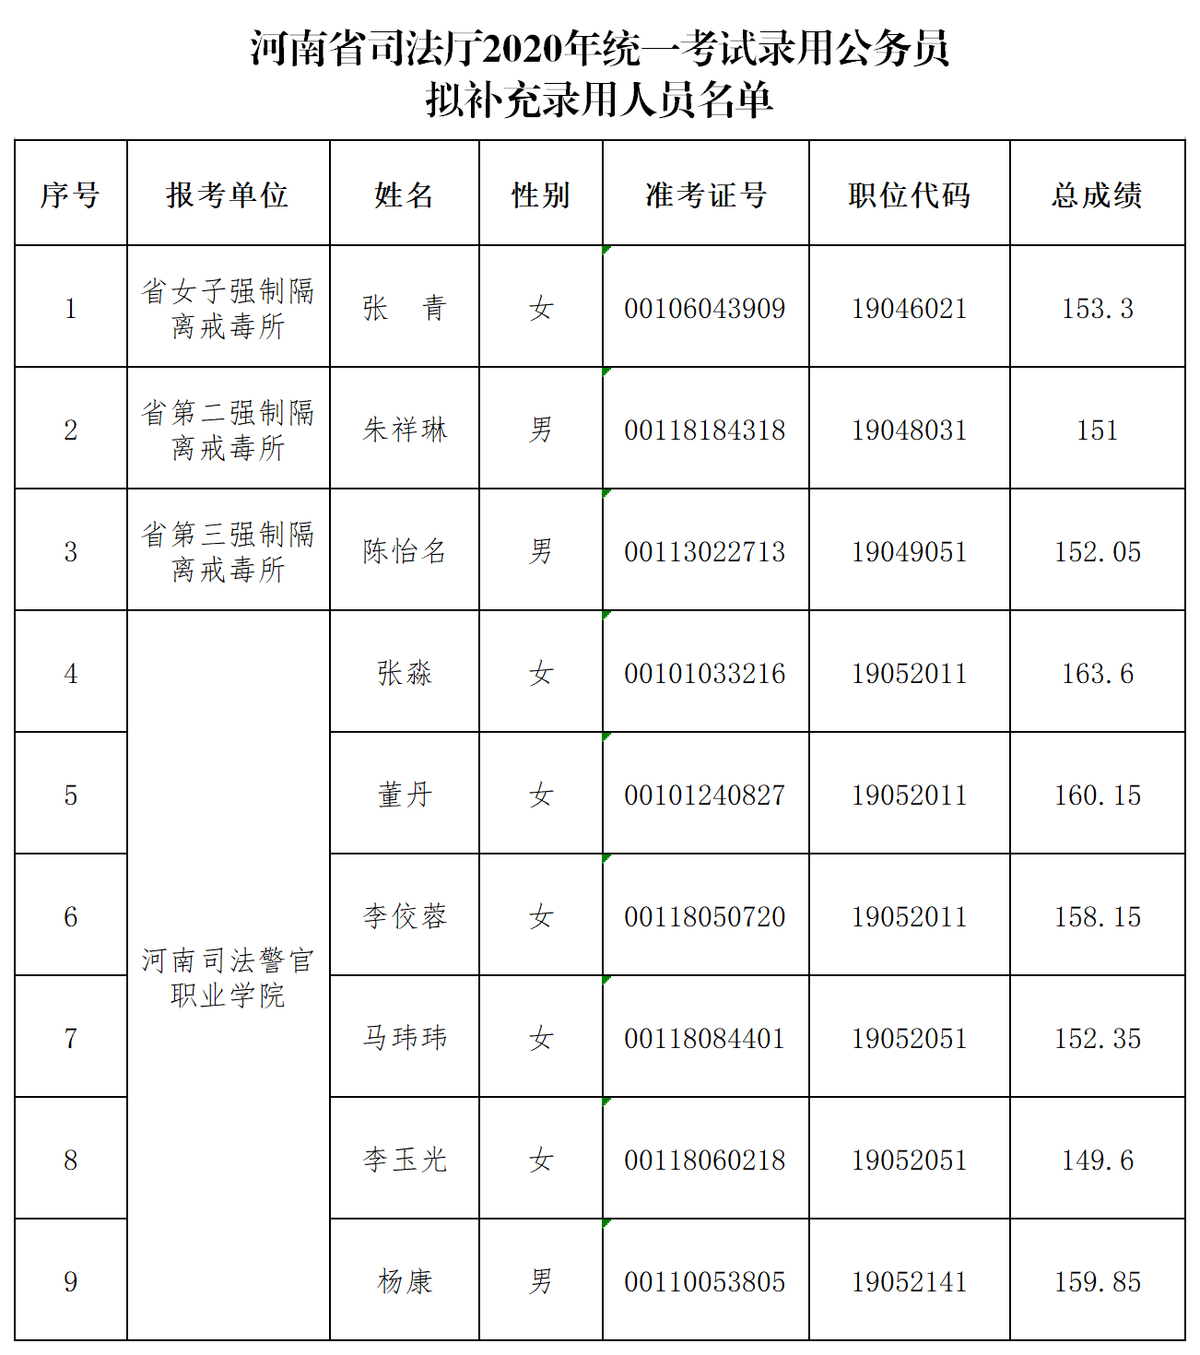 河南省司法厅2020年统考公务员拟补录人员名单公示